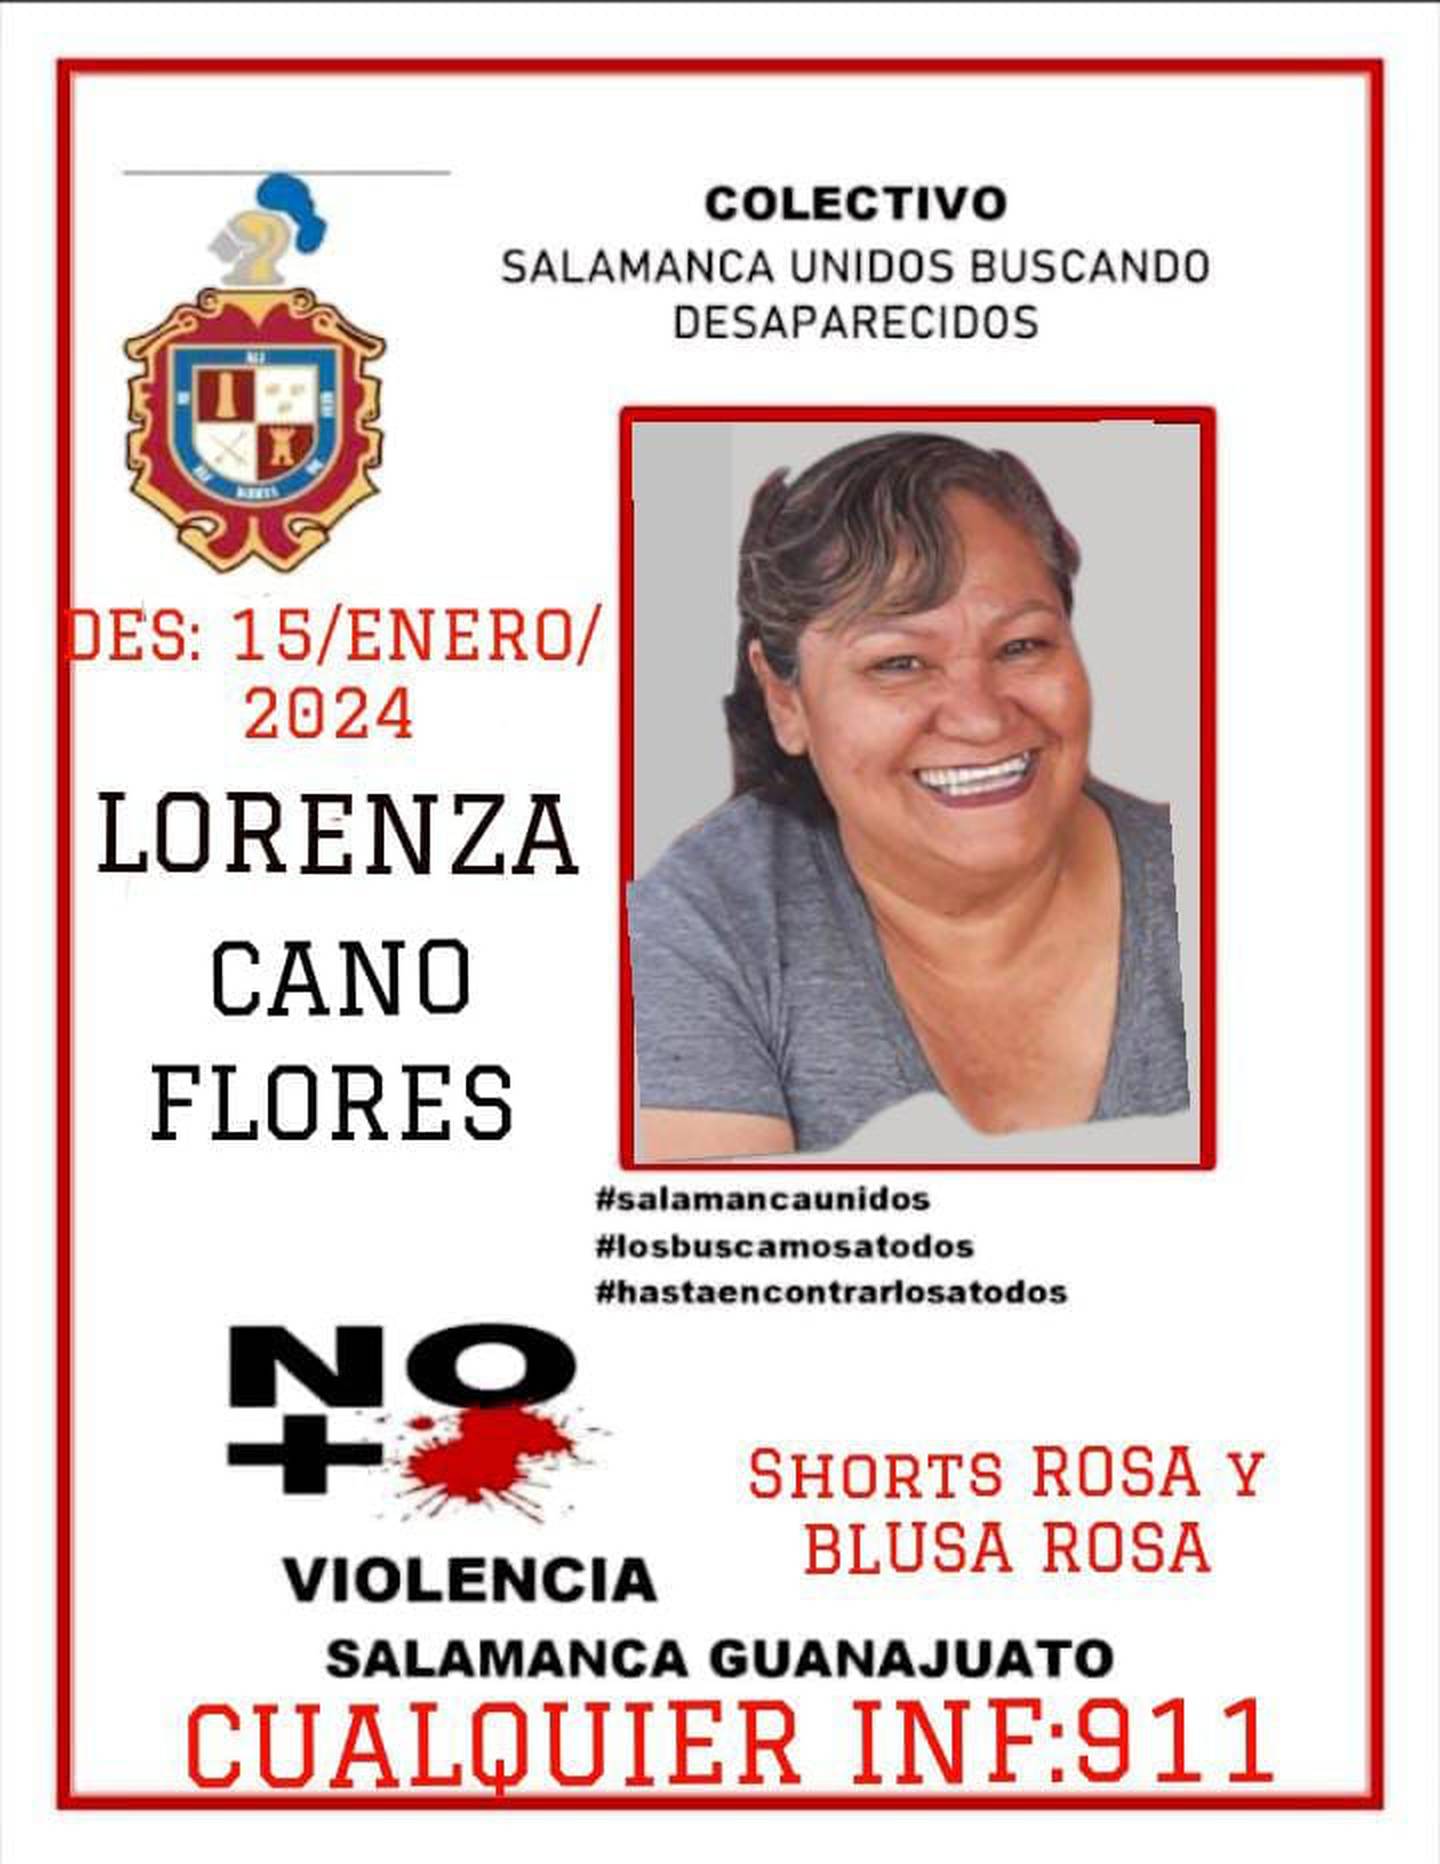 Hombres armados ‘desaparecen’ a madre buscadora y asesinan a su familia en Guanajuato